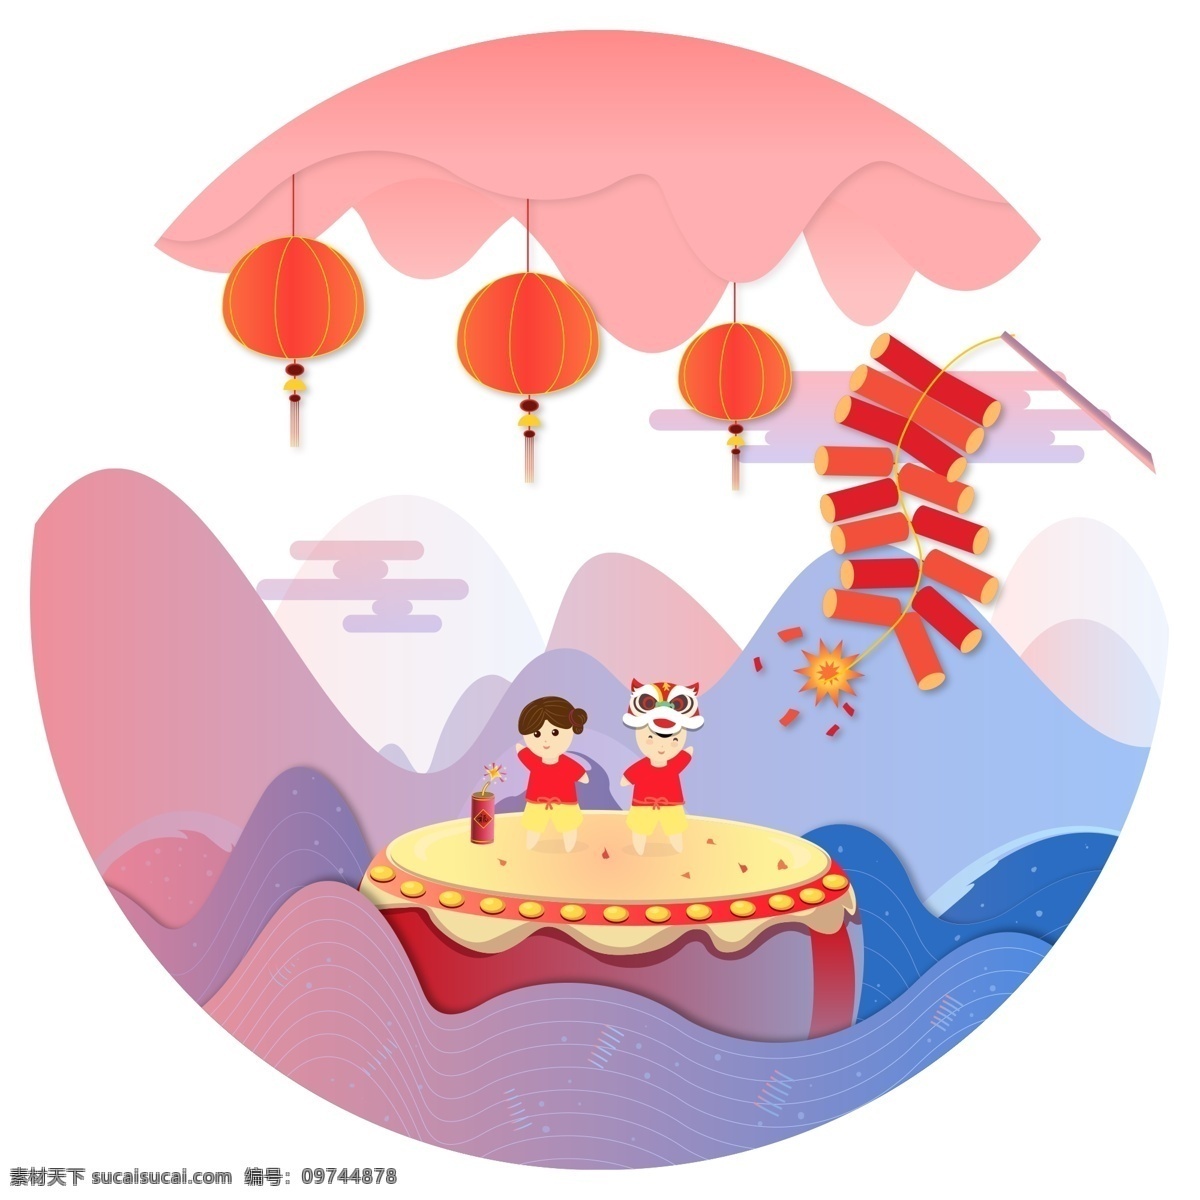 中国 风 古典 大鼓 鞭炮 红灯笼 中国风 古风 卡通 装饰画 风景中华 过年 新年 2019年 中国传统节日 中国红 小景观